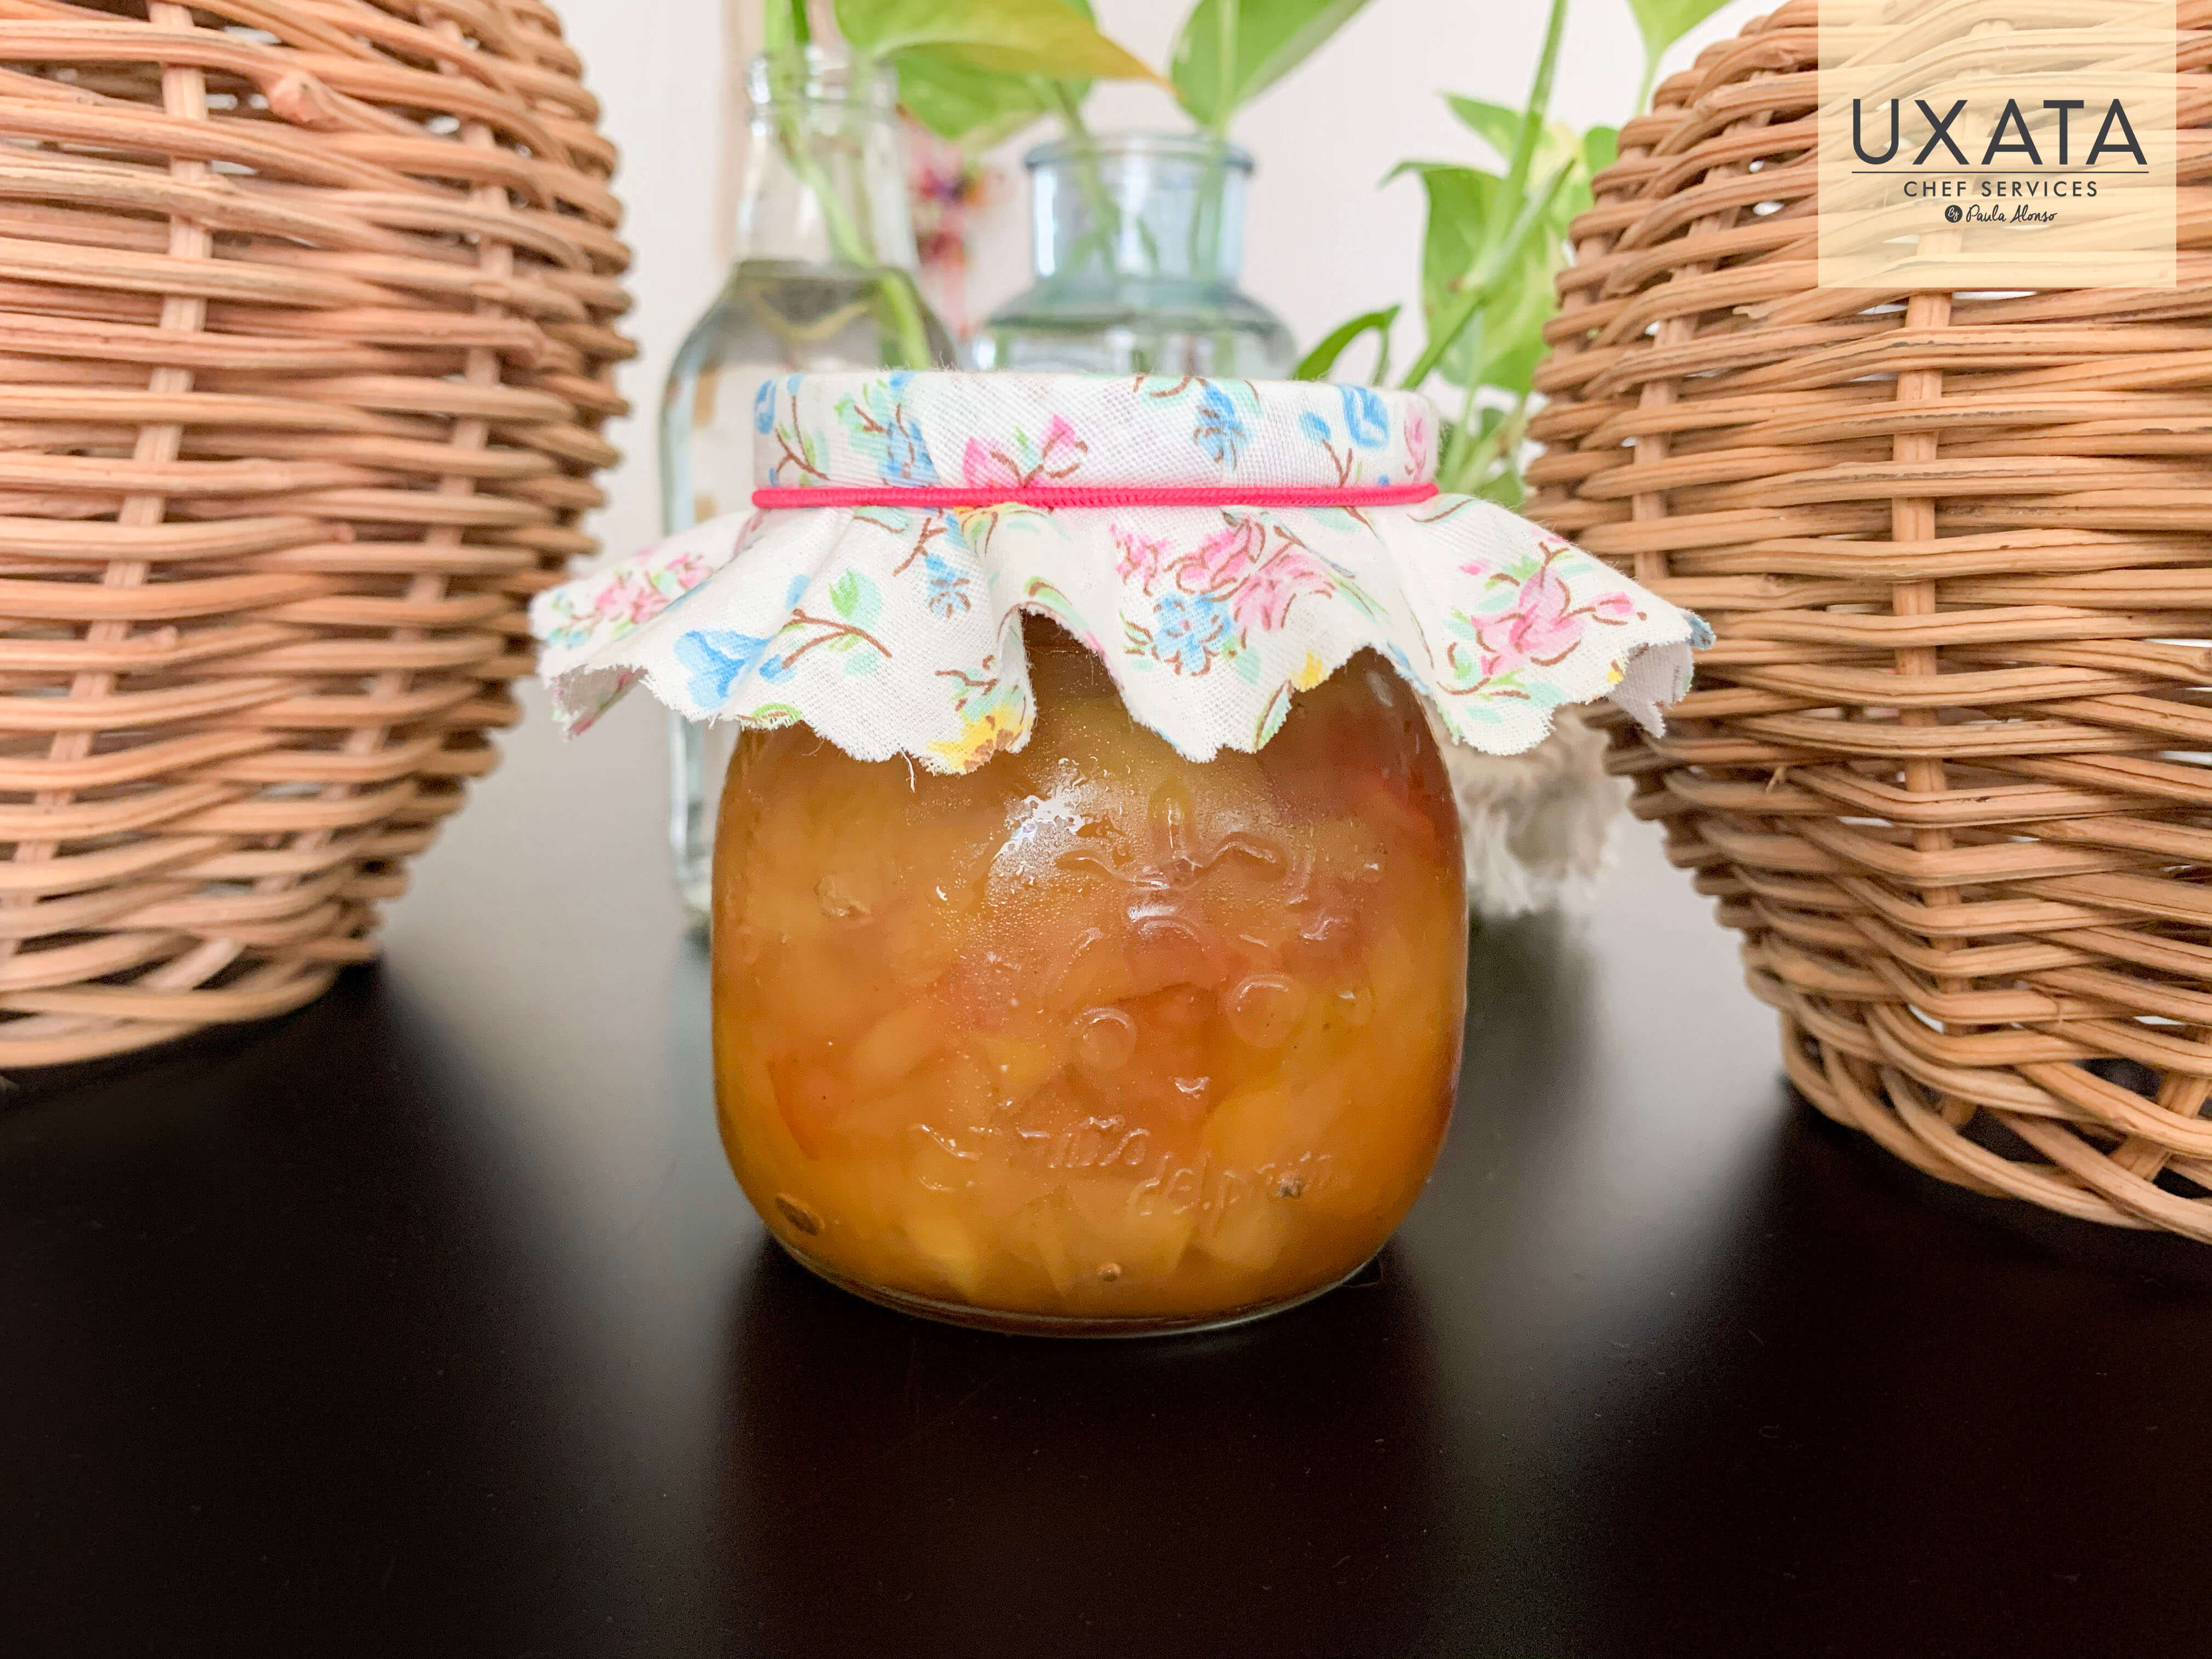 Mermelada de manzanas y especias en un hermoso pote, por UXATA Chef Services